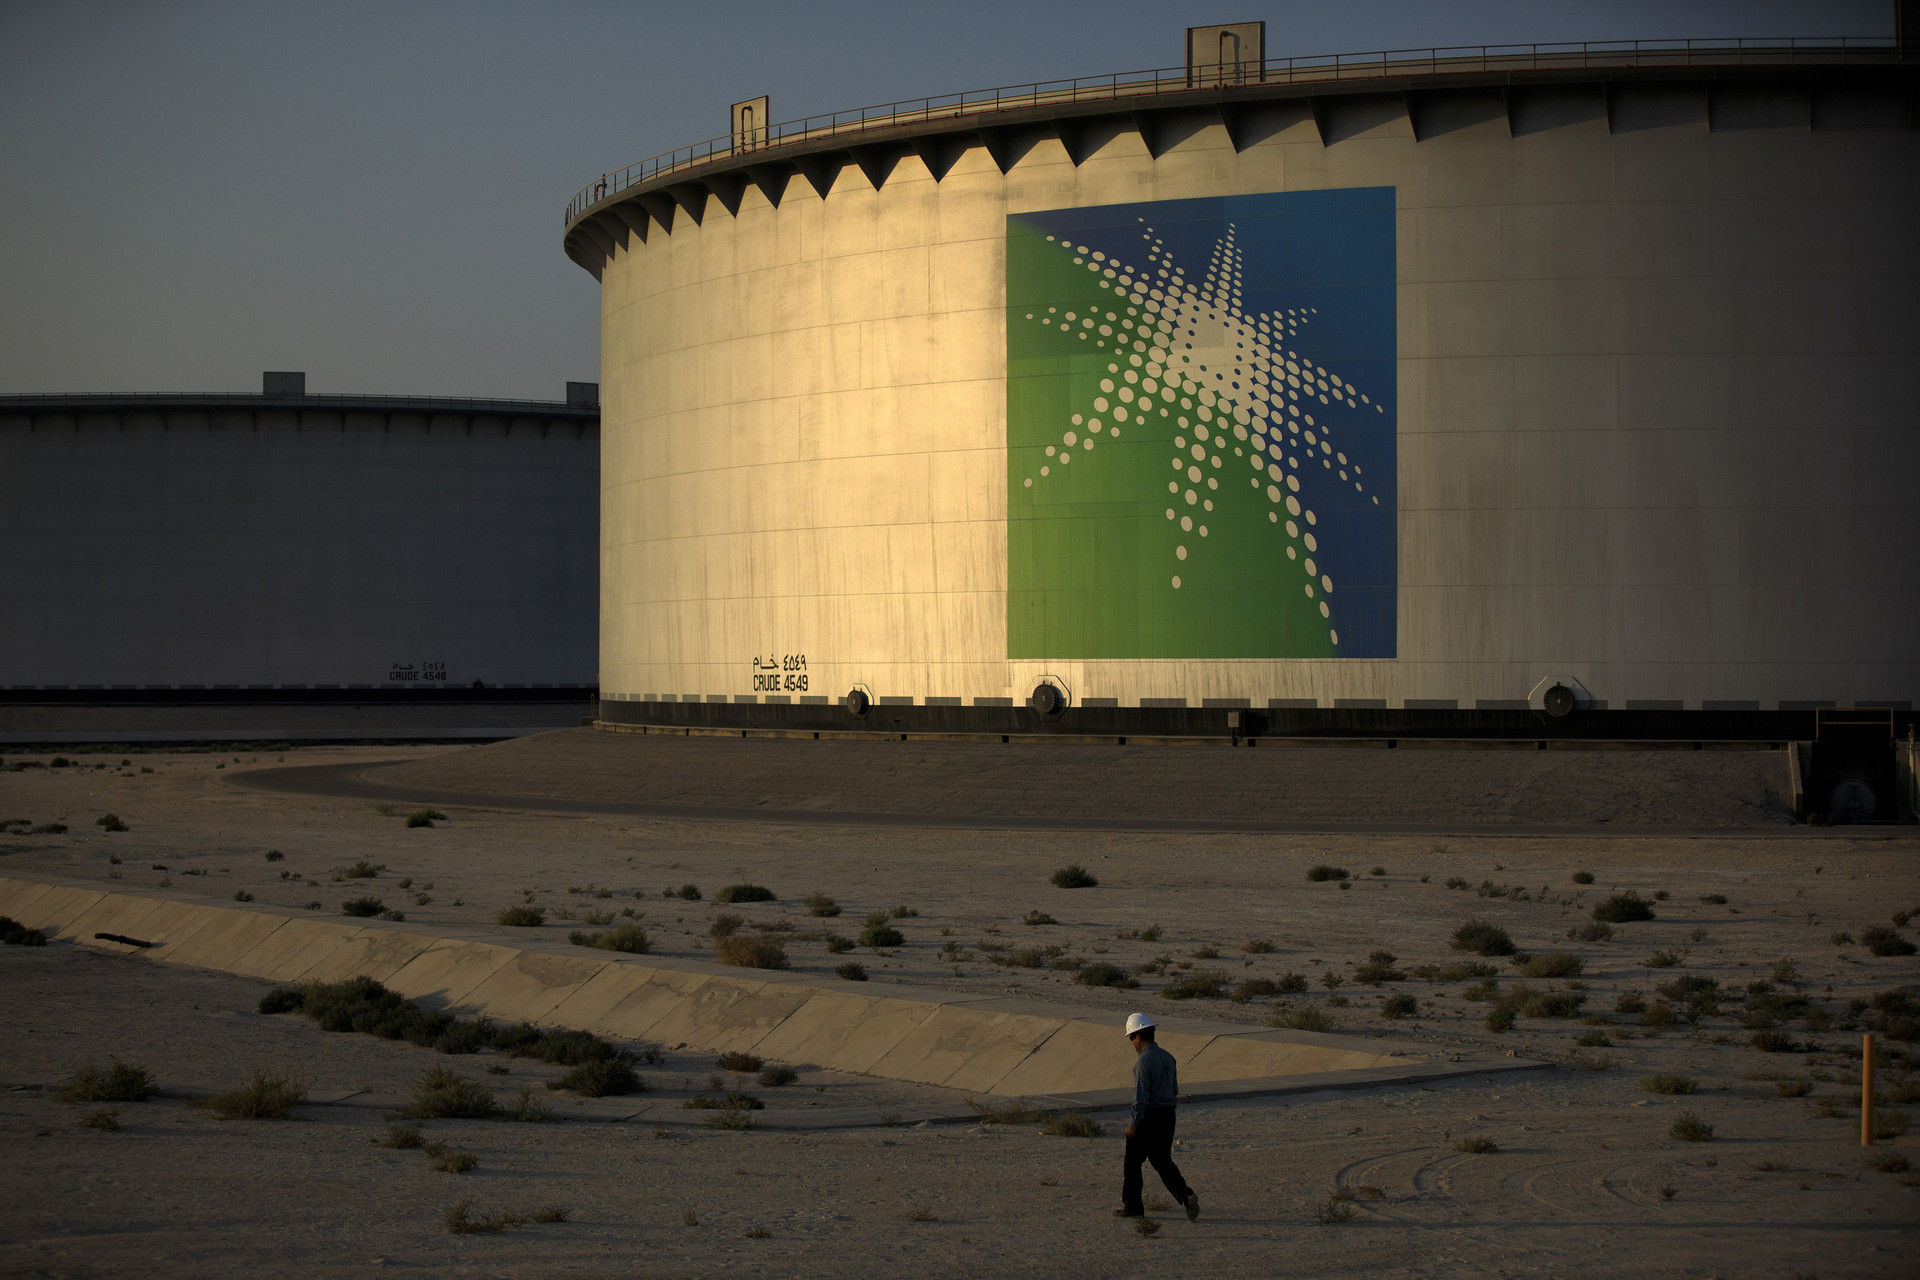 Bất chấp OPEC+ cắt giảm mạnh sản lượng, Ả rập Xê út tuyên bố bơm đủ dầu cho khu vực Bắc Á